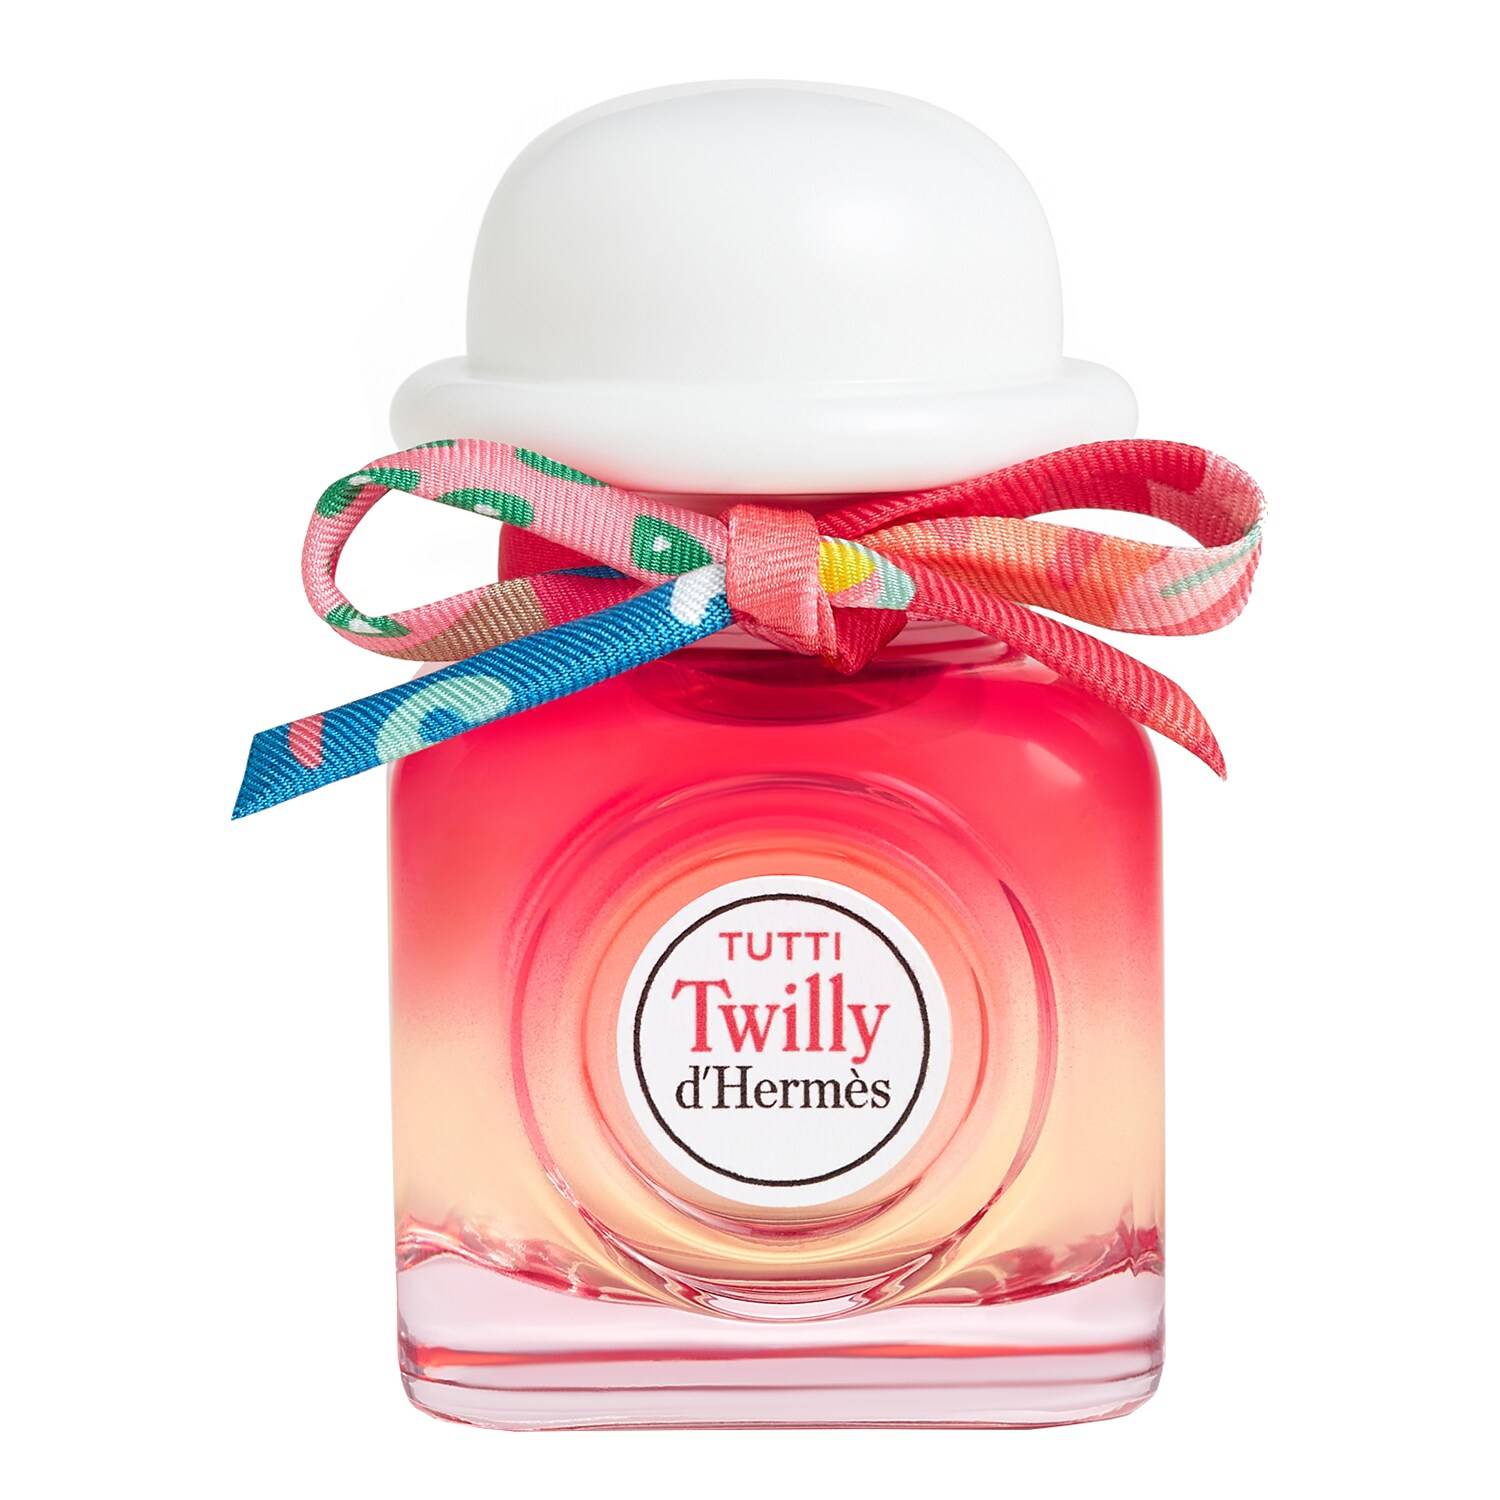 Hermes Tutti Twilly D'Hermes Eau De Parfum 30Ml